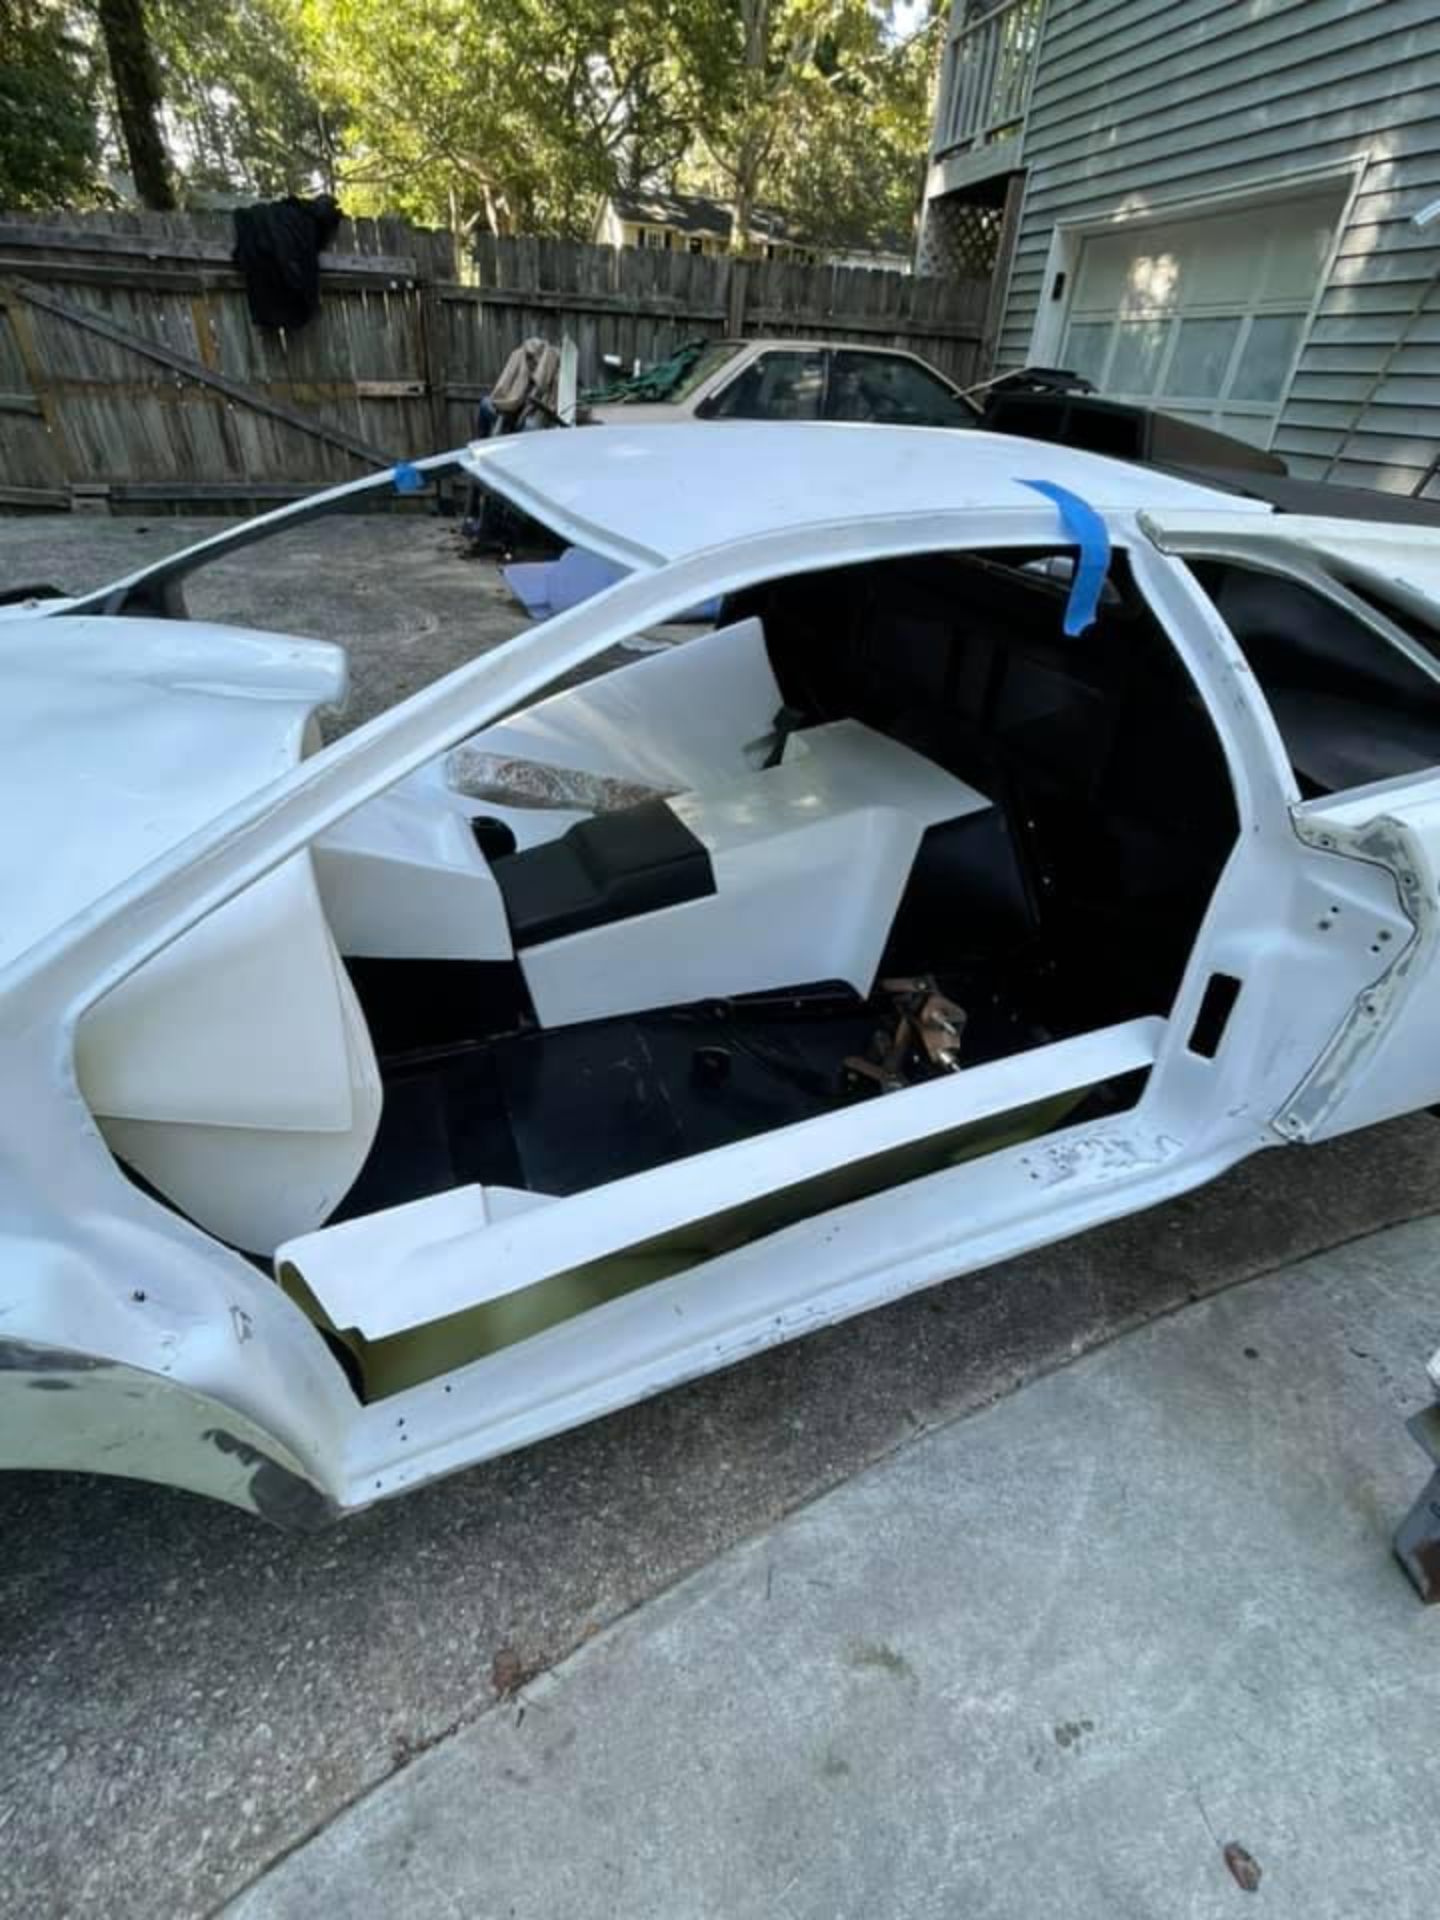 Siêu xe Lamborghini ‘pha ke’, chắp vá mỗi thứ một tí nhưng vẫn hét giá 700 triệu đồng